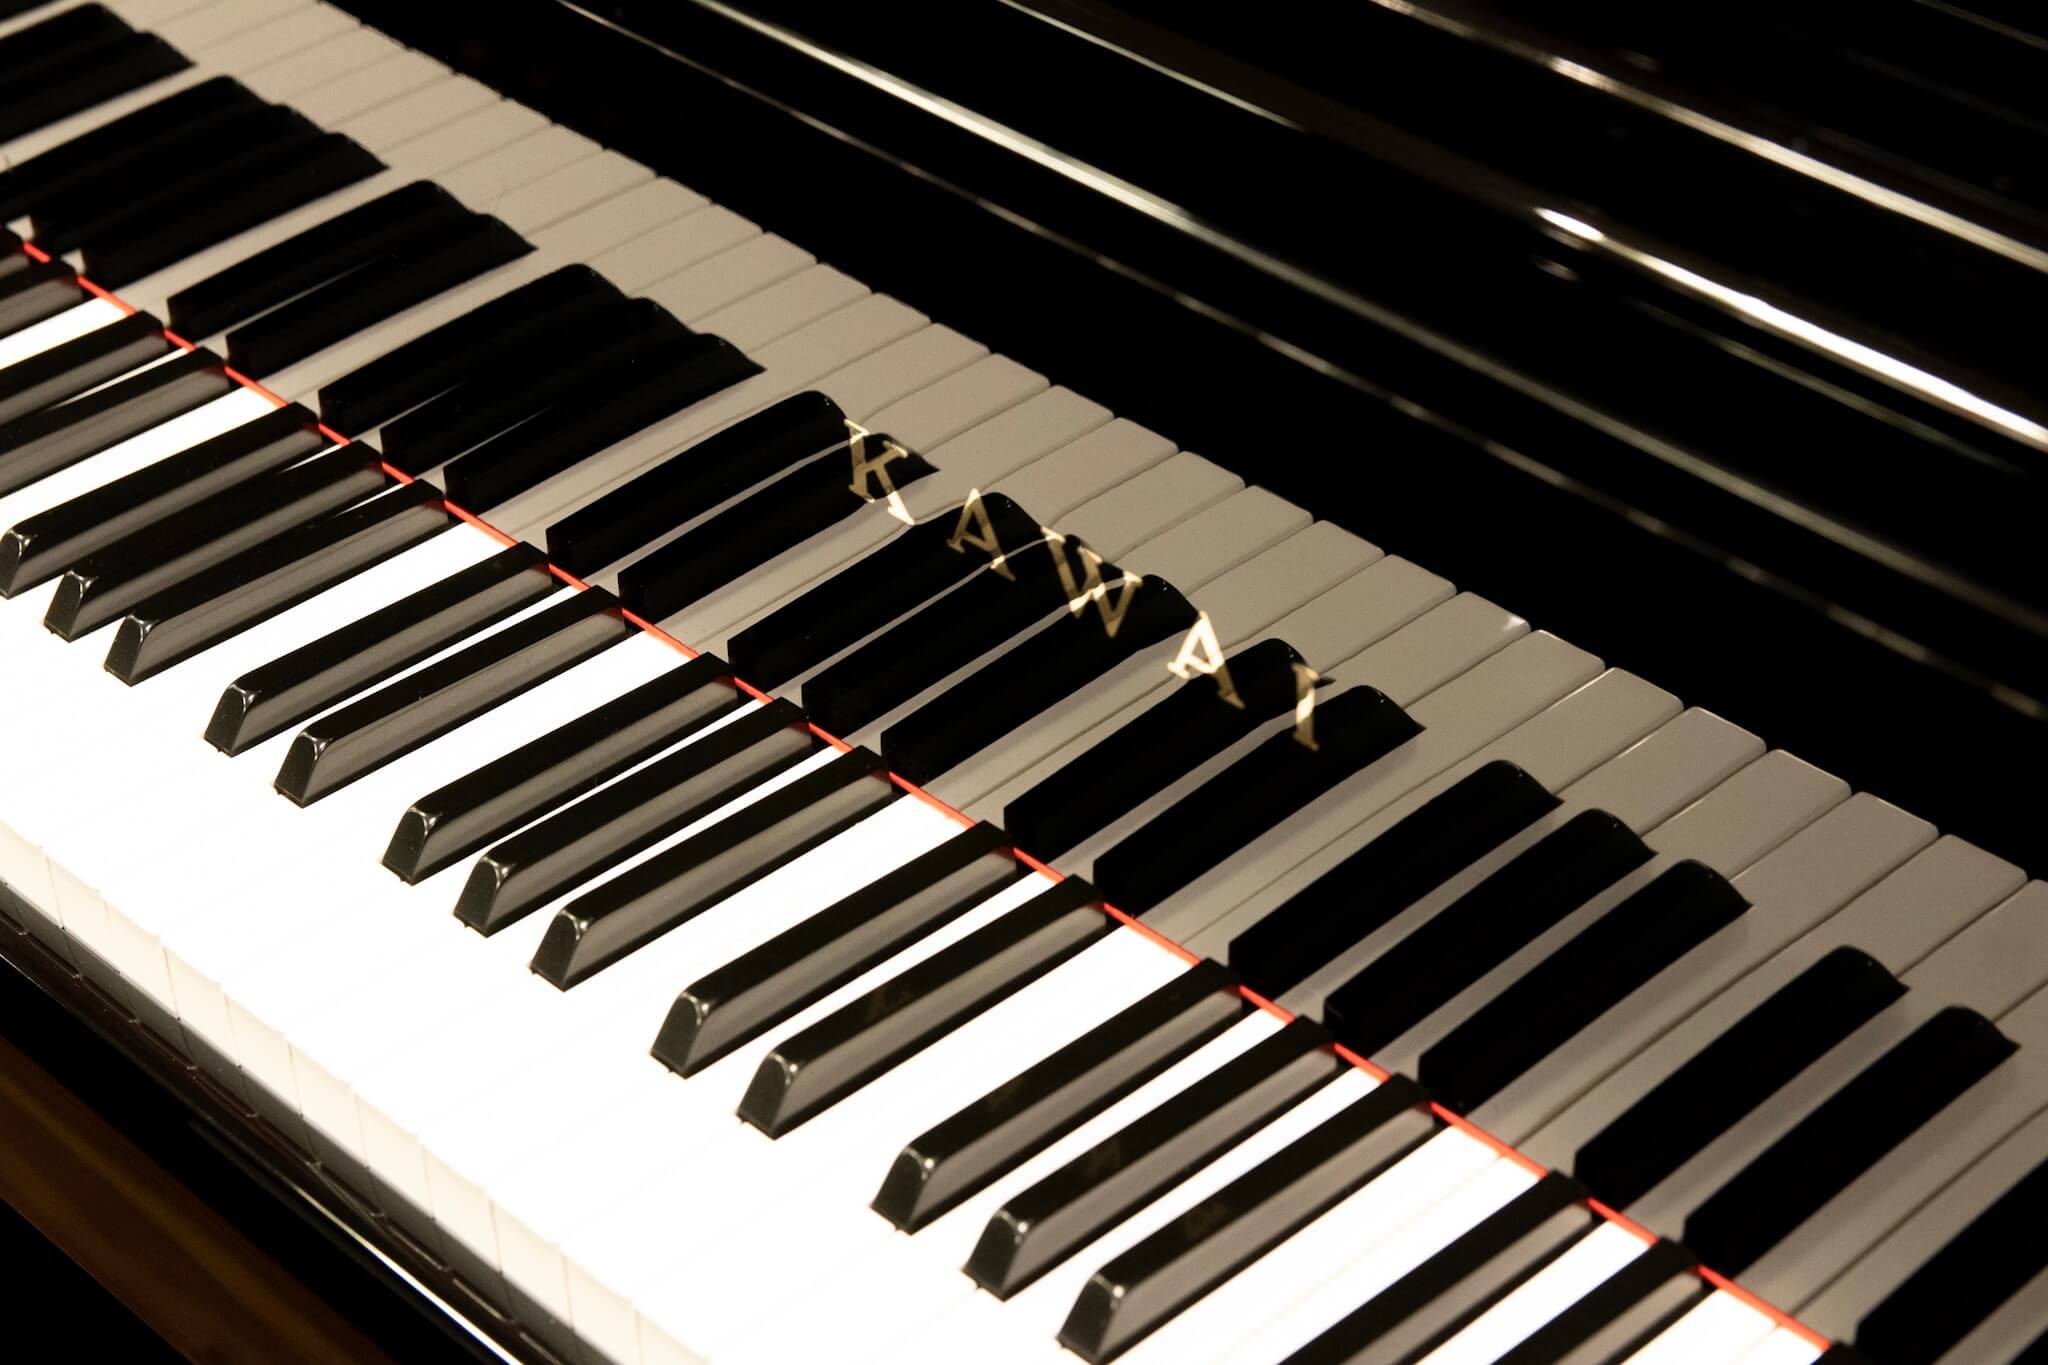 カワイ US6X| 中古ピアノ 自社工房リフレッシュ済3年保証付 | 新響楽器